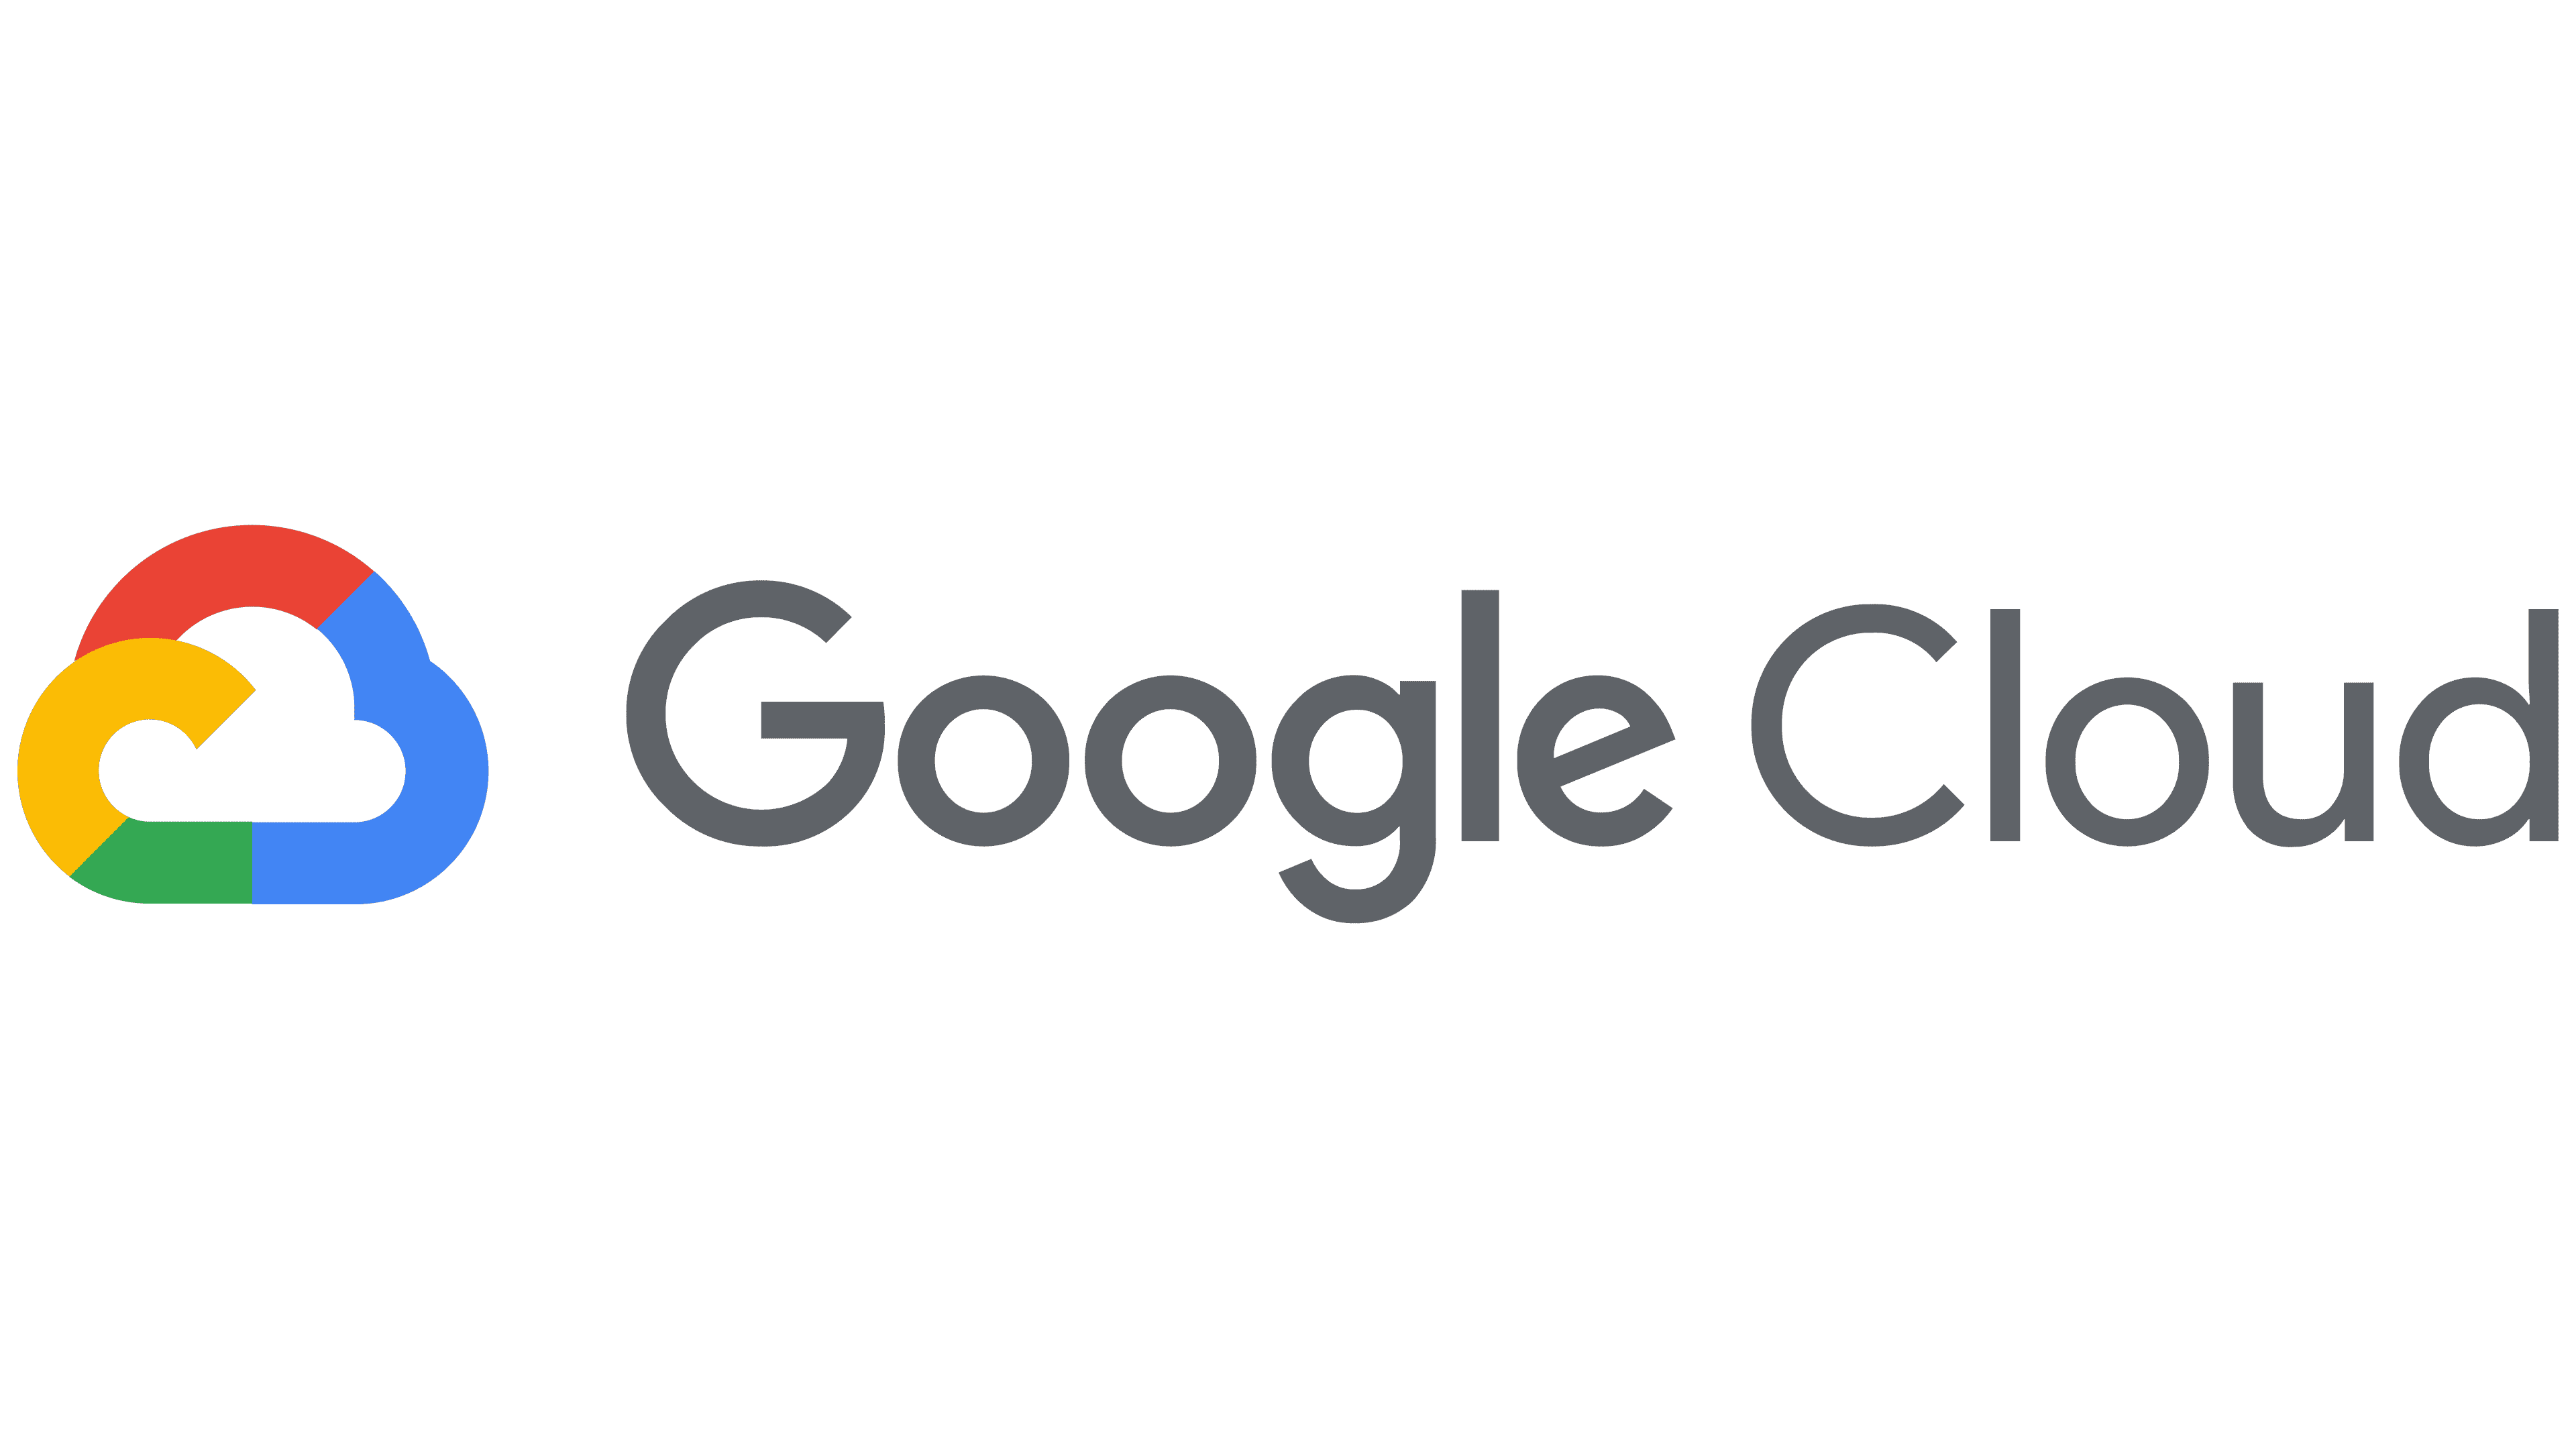 Các thiết kế google cloud logos độc đáo và chuyên nghiệp nhất